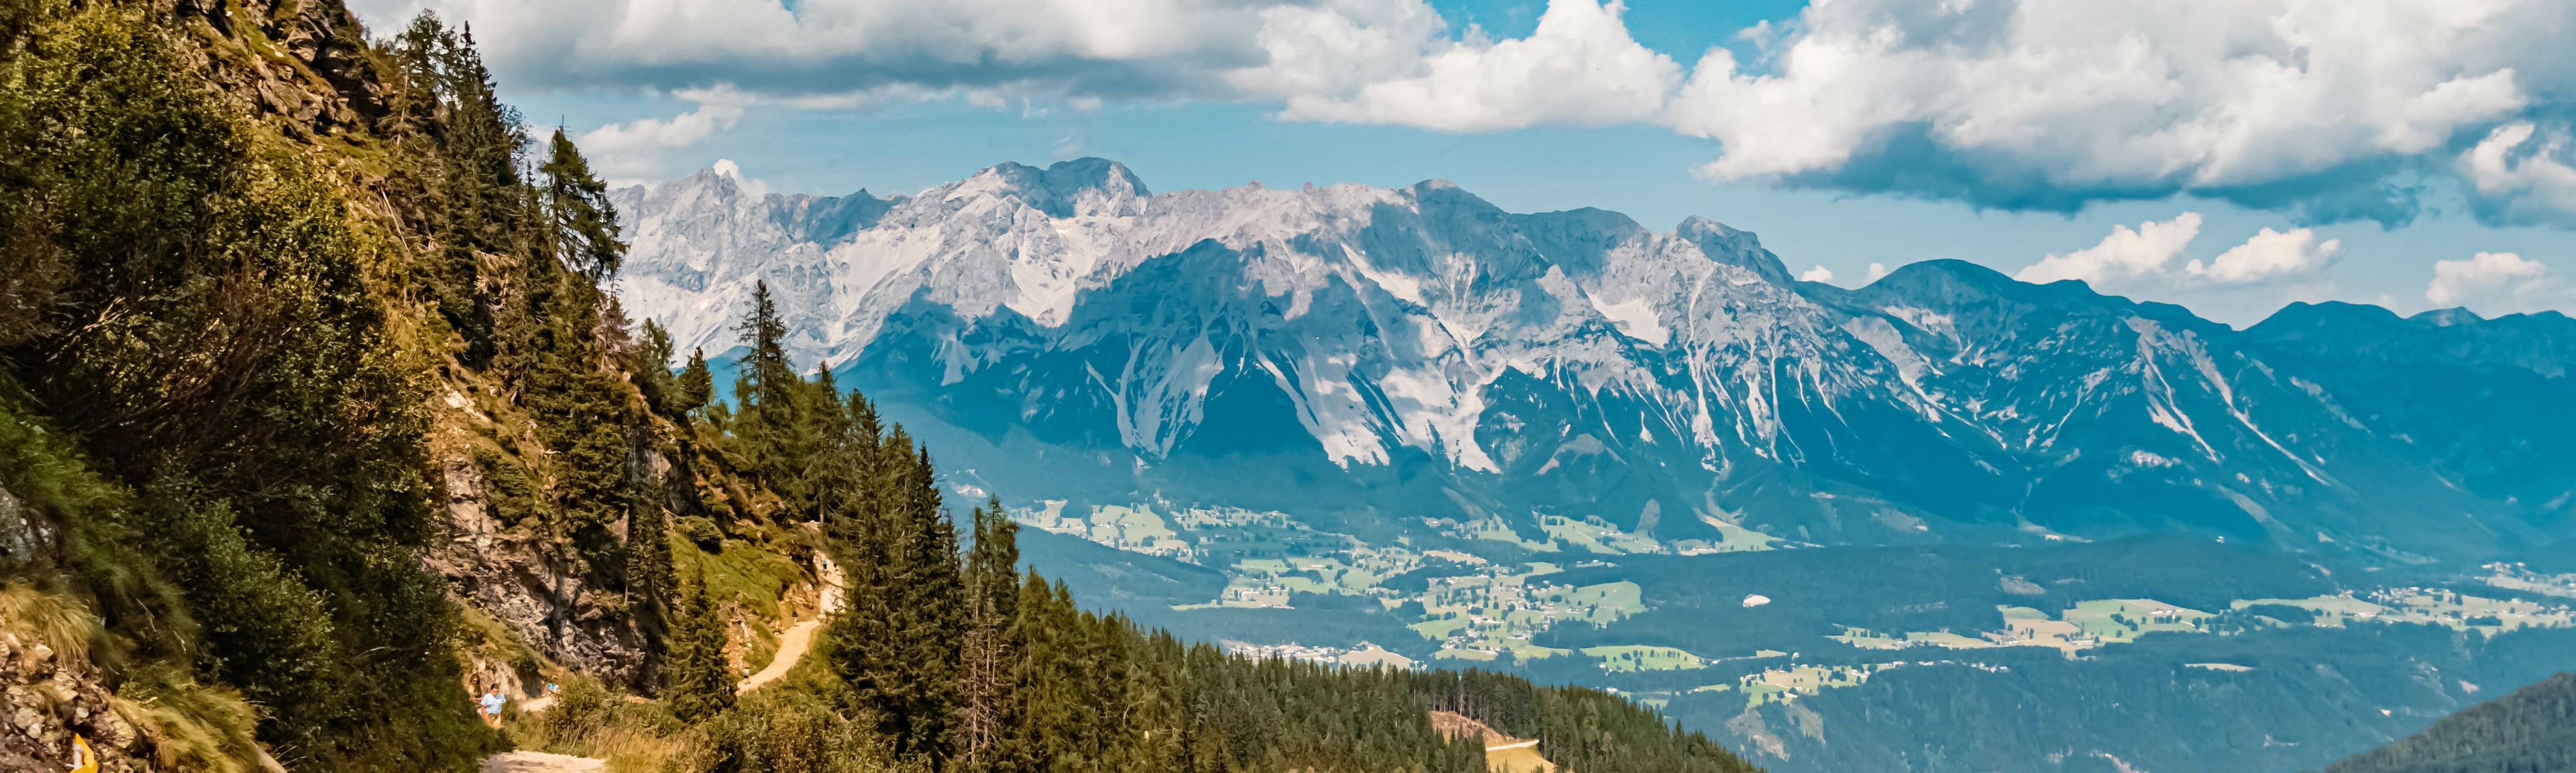 Sentier de randonnée en Autriche dans les montagnes